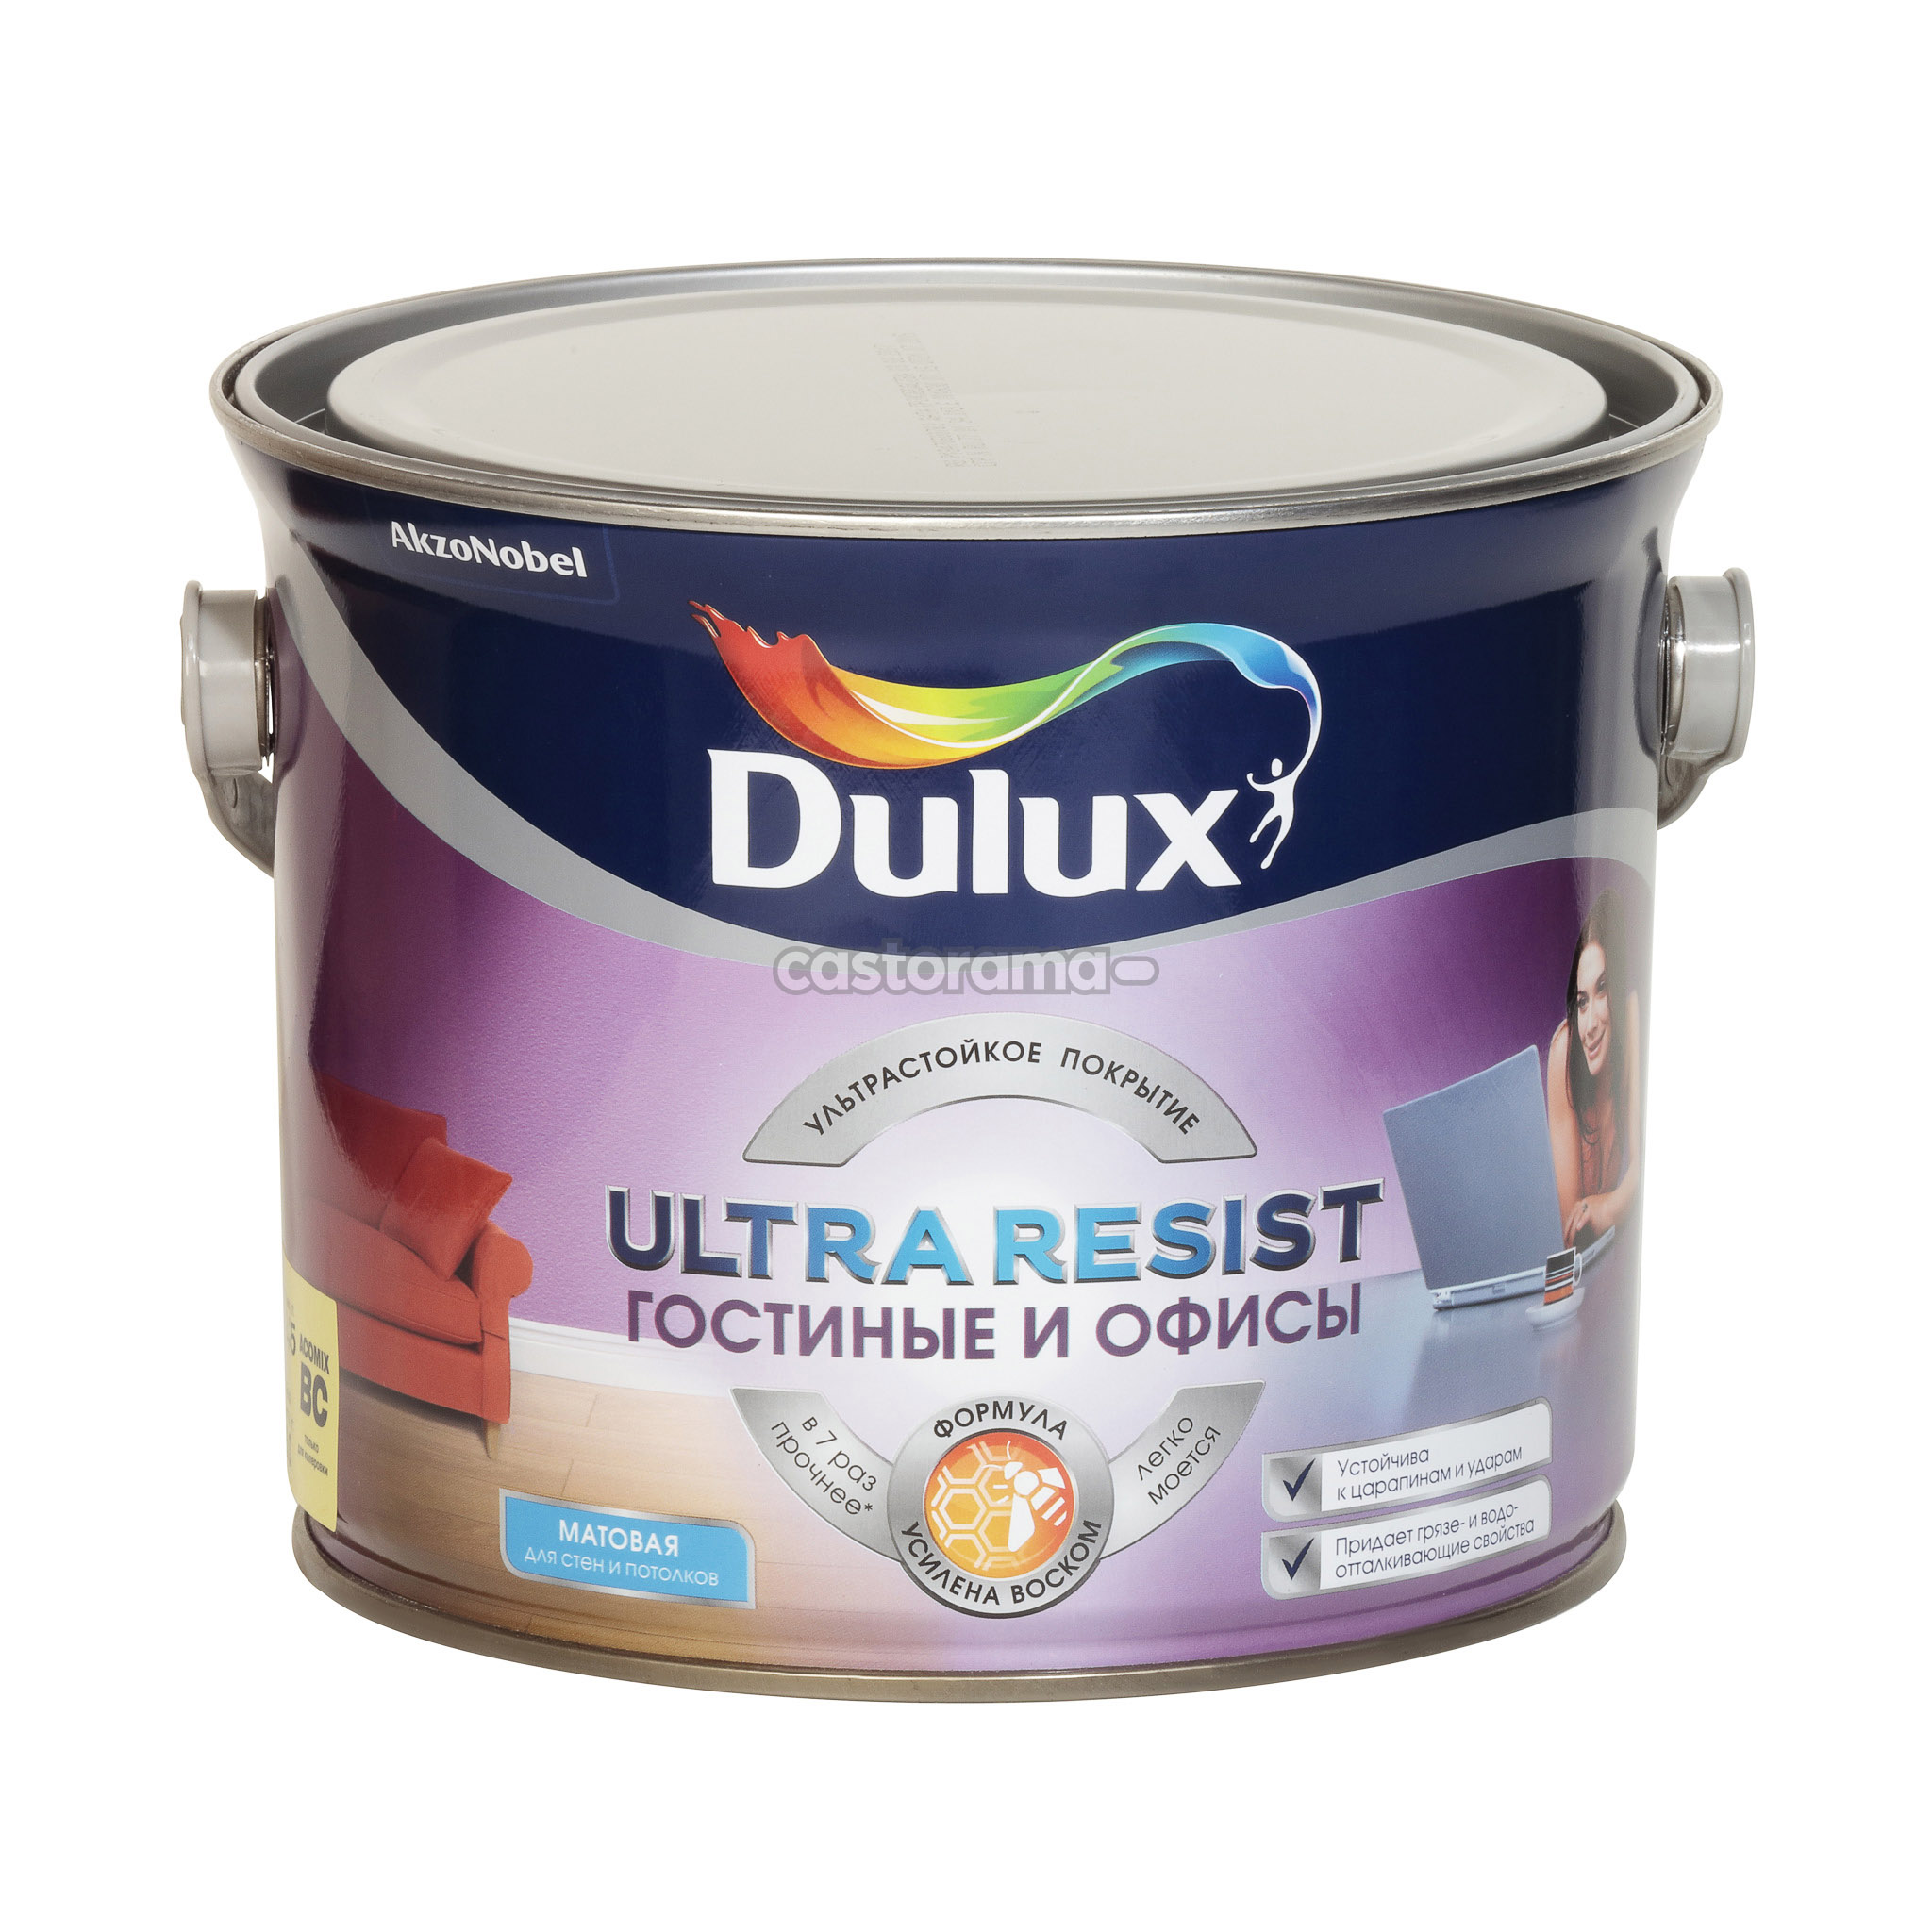 Ультра резист. Dulux Ultra resist. Dulux Ultra resist для гостиной и офиса матовая, база BC. Dulux Ultra resist гостиные и офисы. Dulux Ultra resist 30gy 15\242..